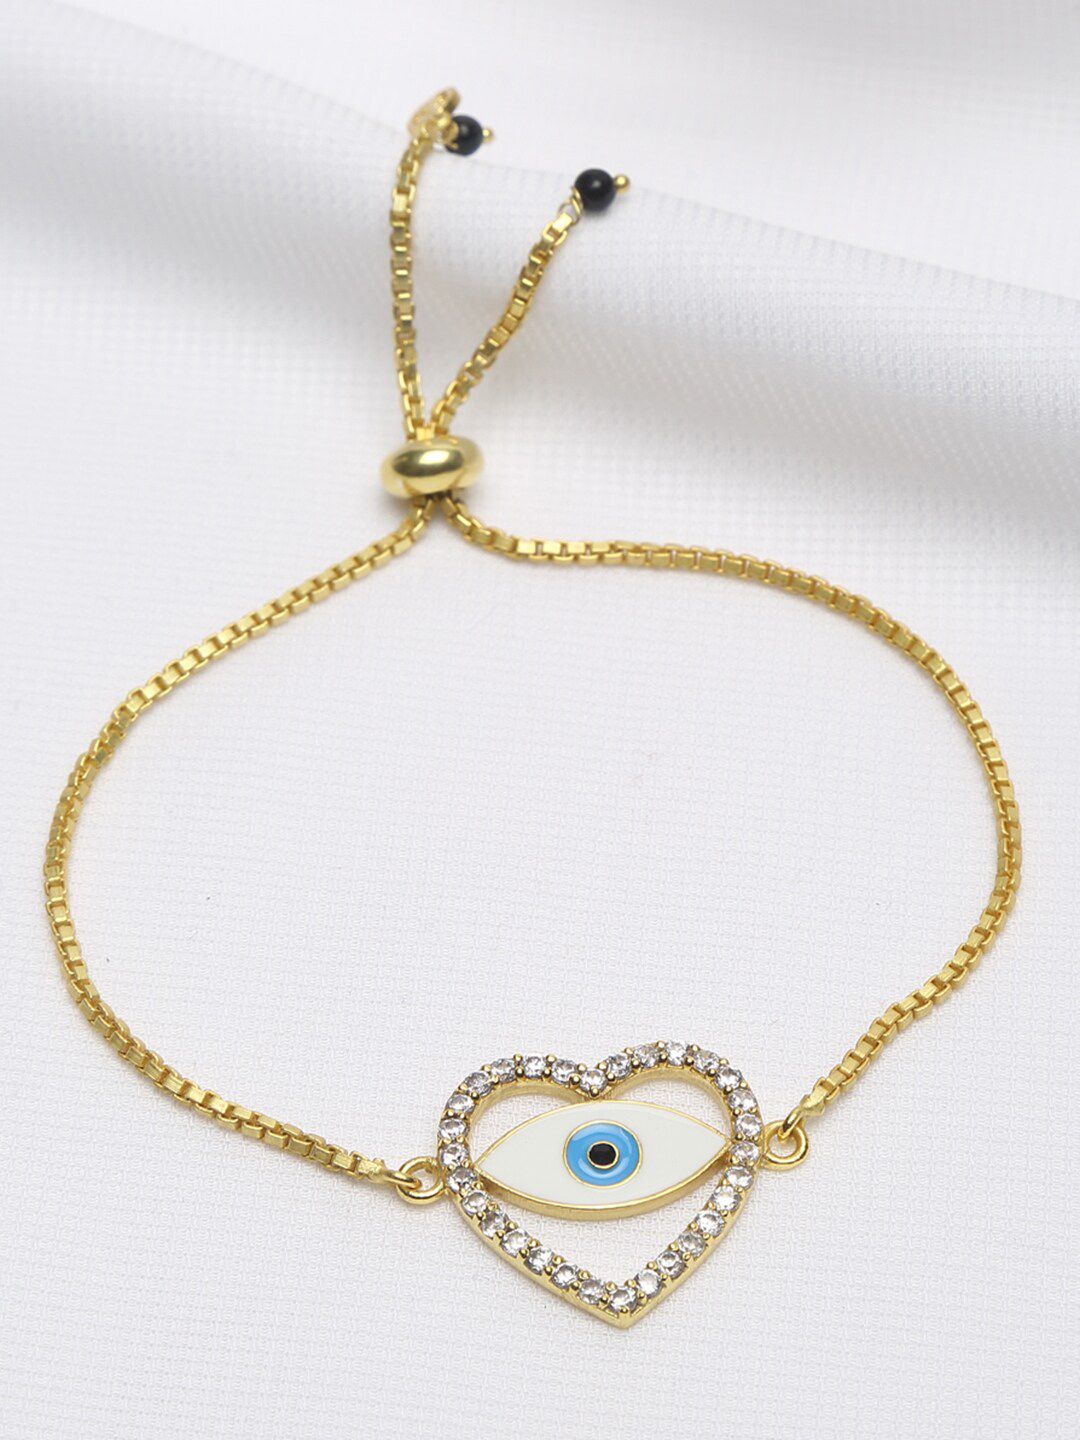 EK BY EKTA KAPOOR Women Gold-Plated & Blue Heart Evil Eye Charm Bracelet Price in India